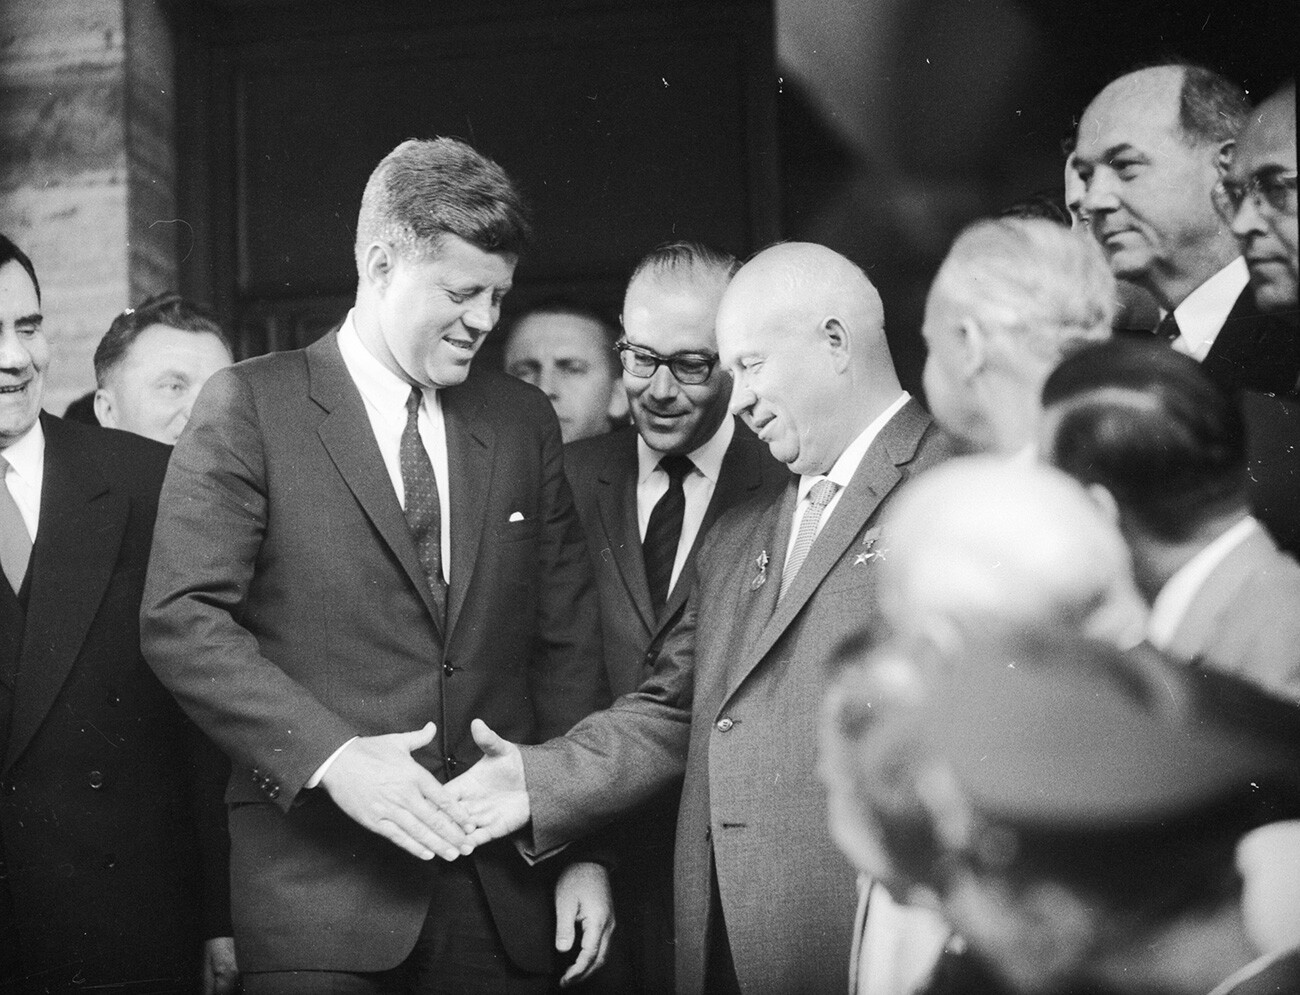 Der sowjetische Anführer Nikita Chruschtschow, Erster Sekretär der Kommunistischen Partei der Sowjetunion, und der US-Staatsmann John F. Kennedy, 35. Präsident der USA, geben sich in der US-Botschaft in Wien die Hand, nachdem sie sich zu Gesprächen getroffen haben.